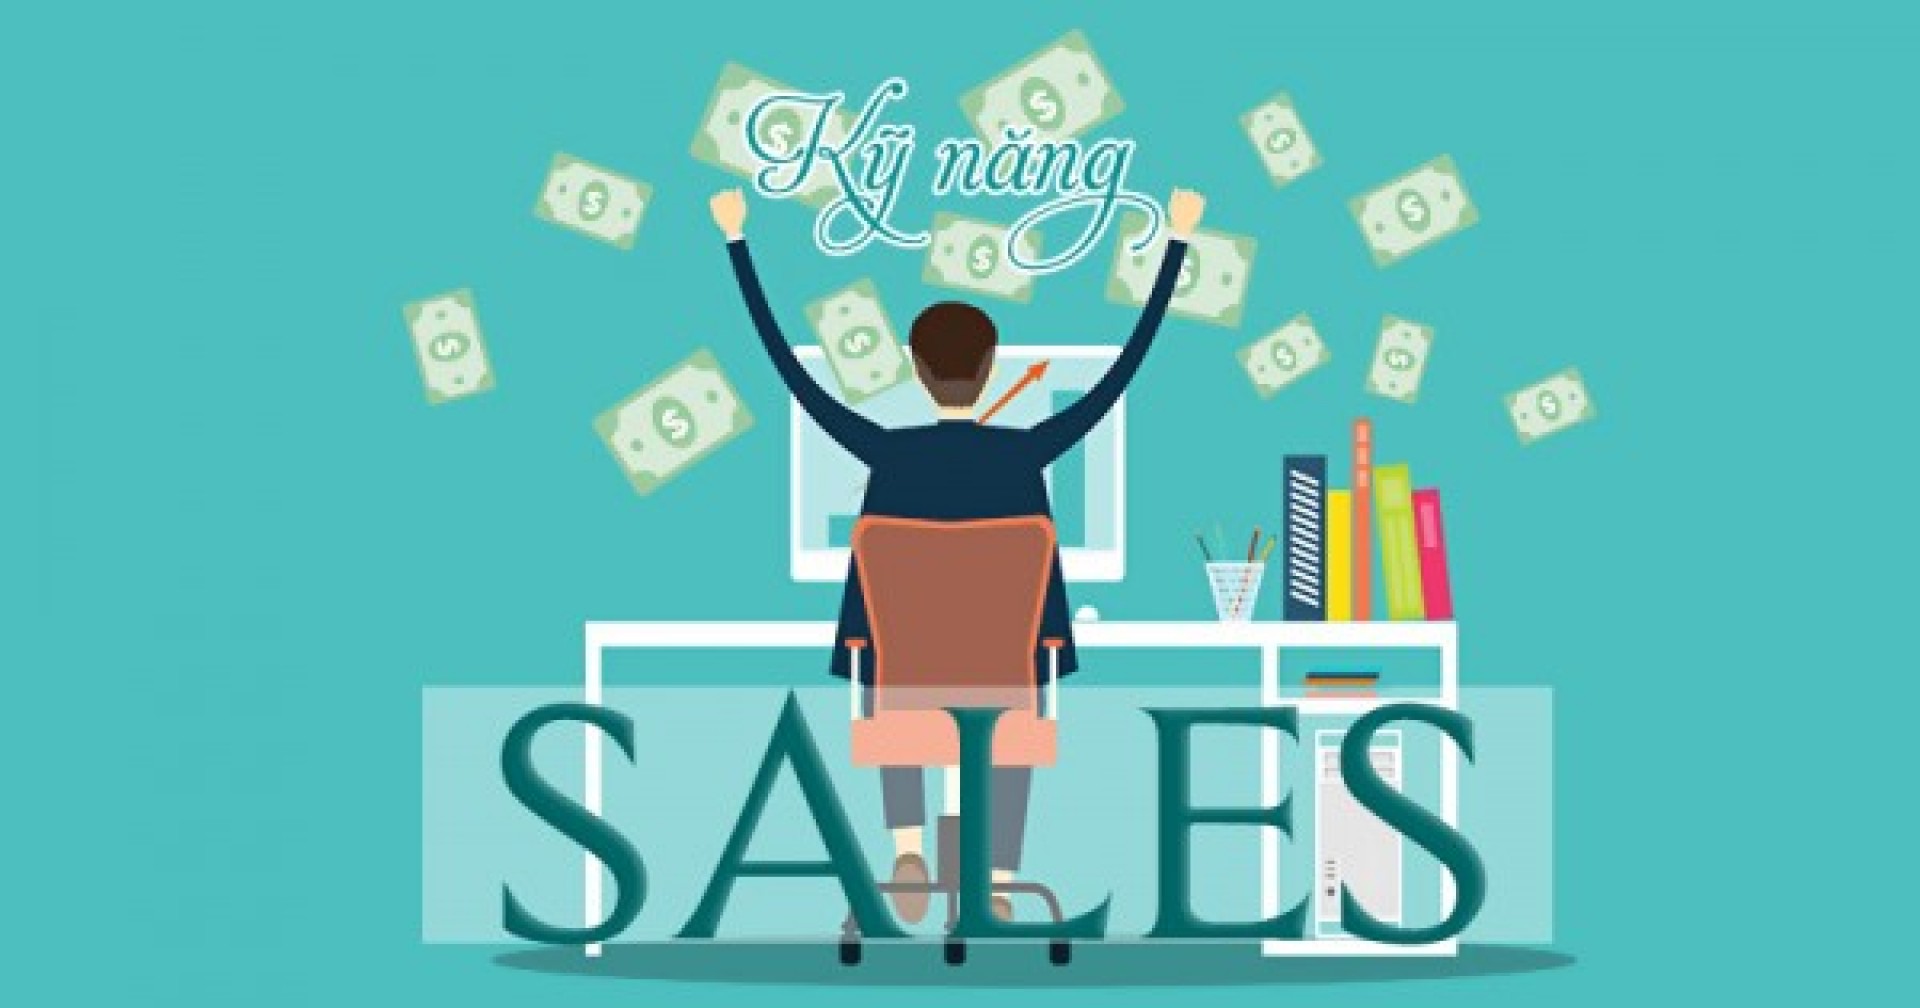 Trở thành sales chuyên nghiệp, bạn không thể bỏ qua những kỹ năng bán hàng này